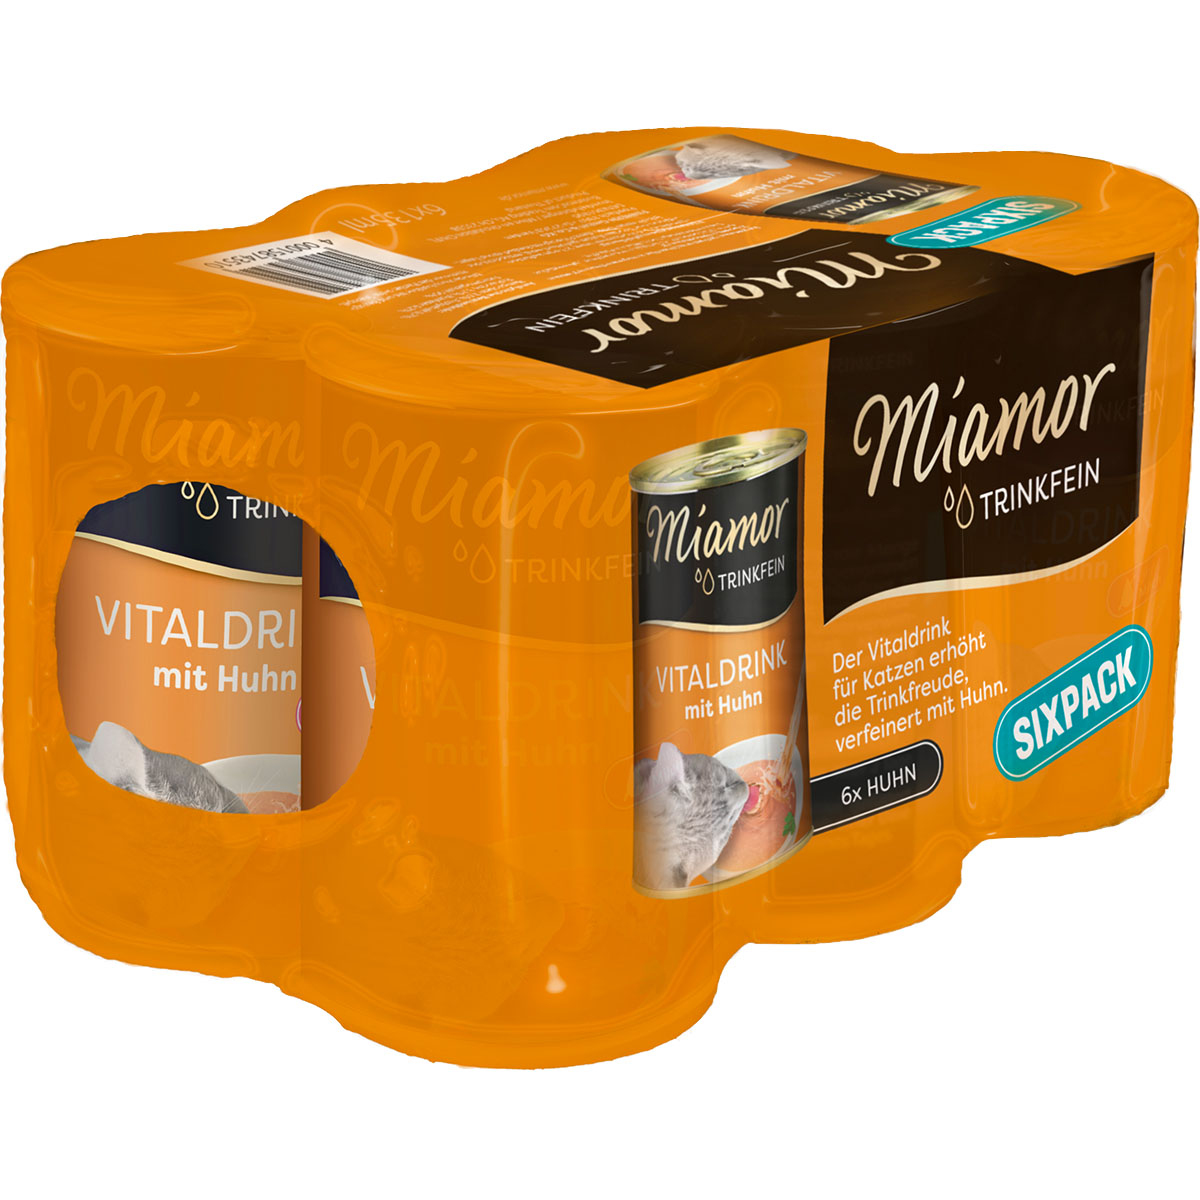 miamor trinkfein vitaldrink mit huhn sixpack